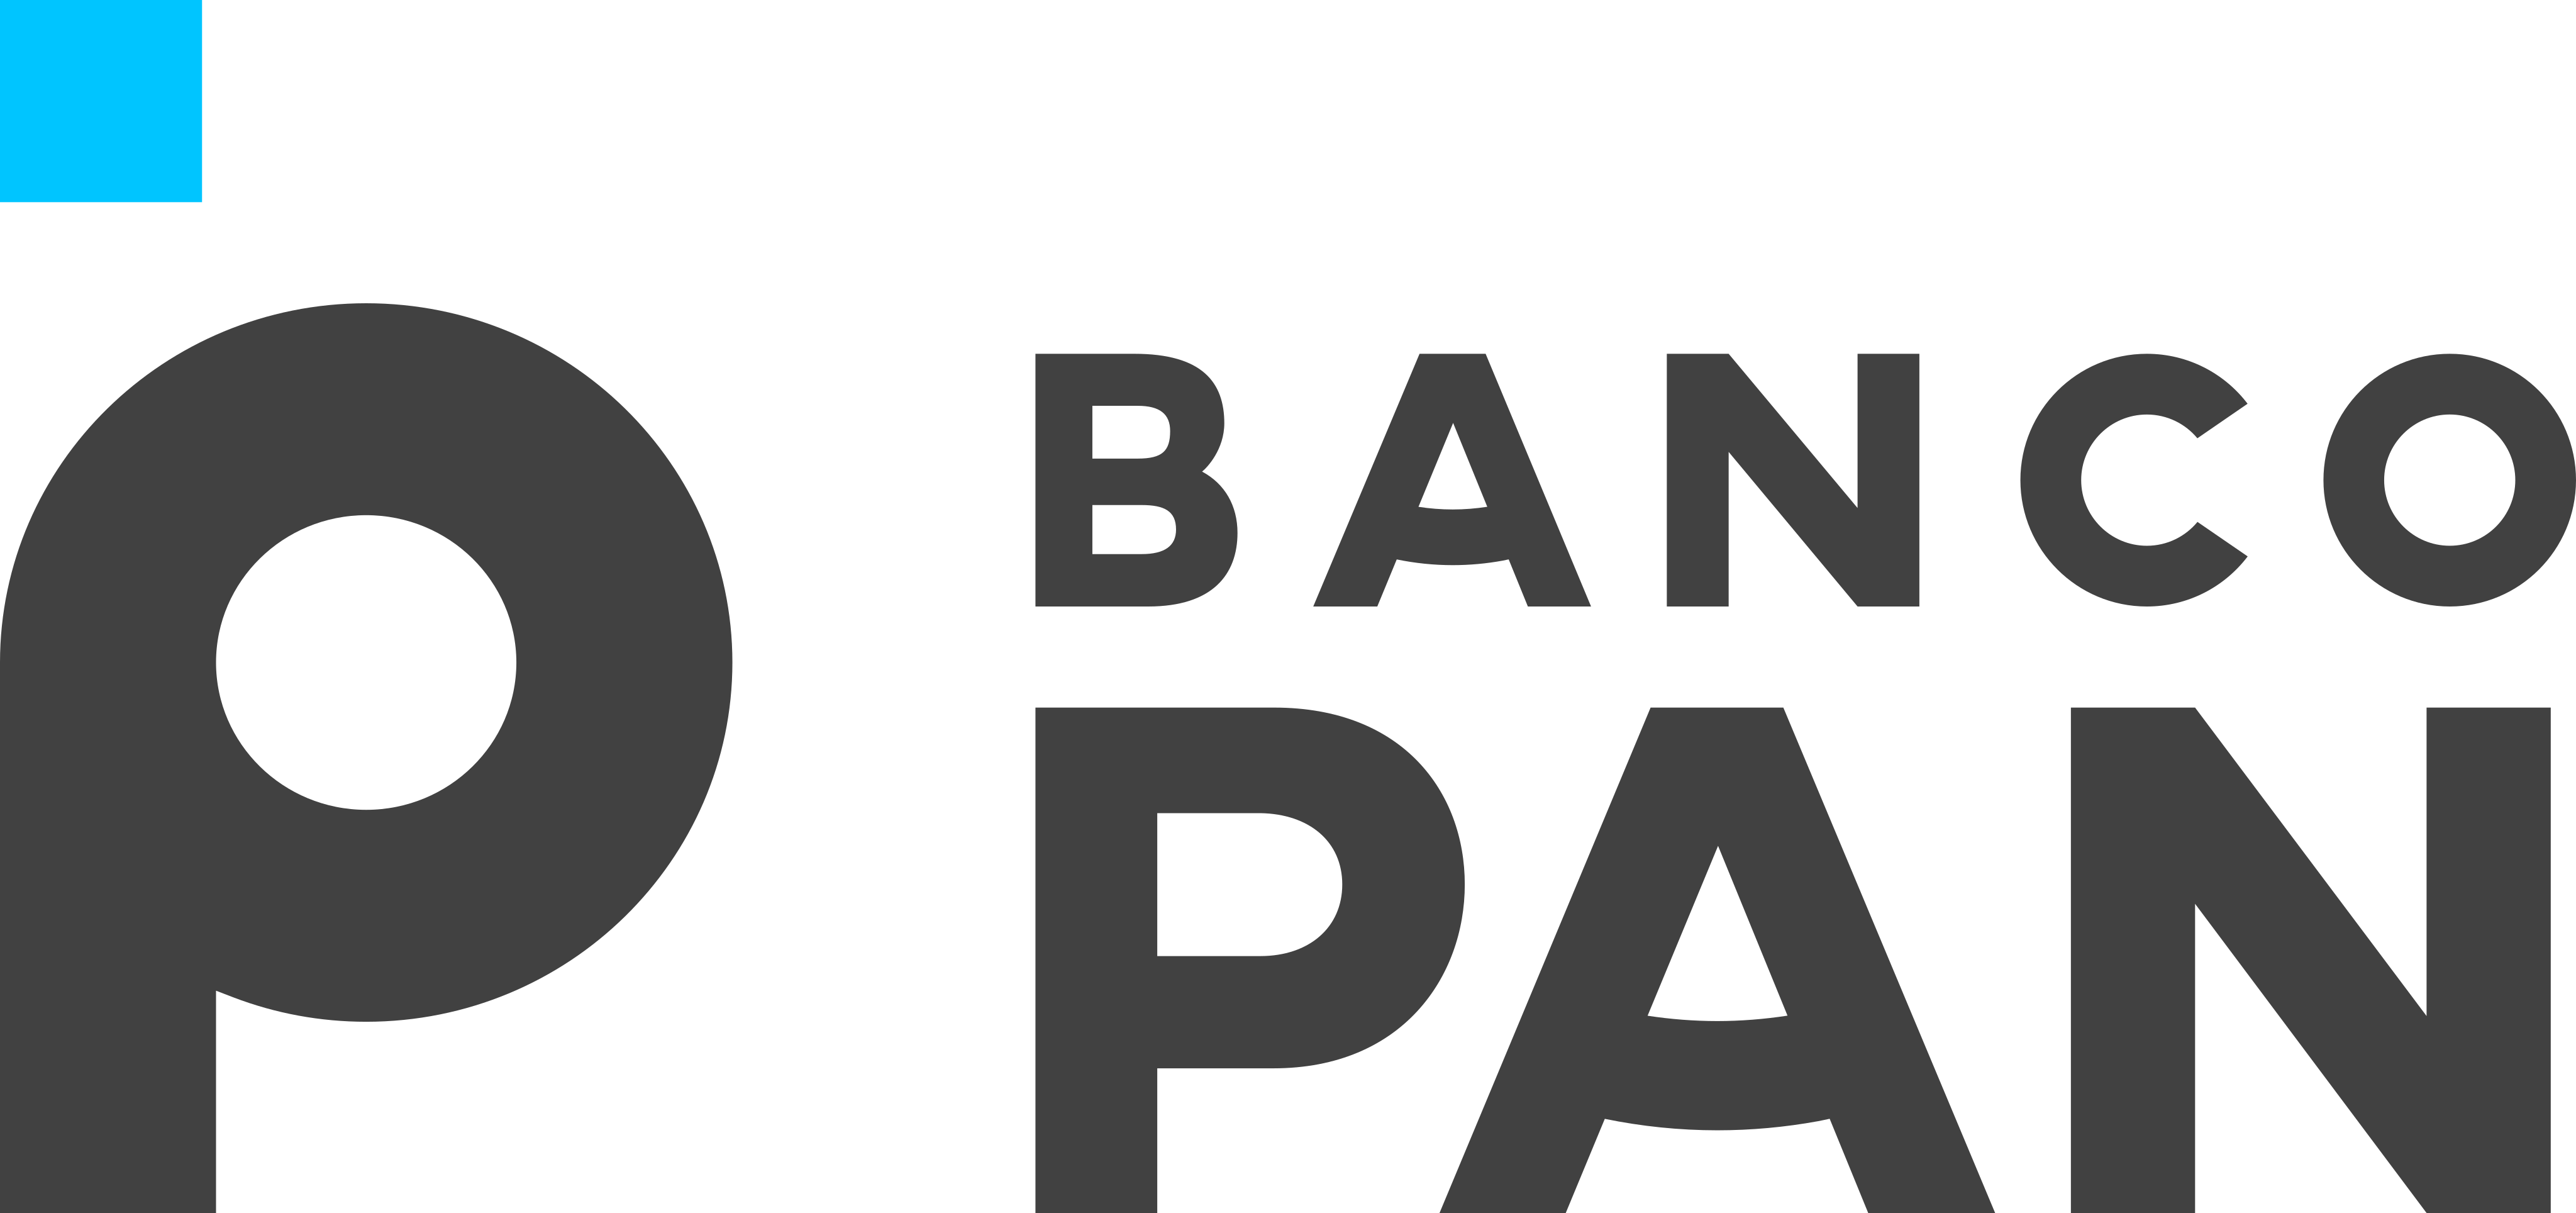 Mas, afinal, o que é o Pan Mastercard Anuidade Zero? Fonte: Banco Pan.